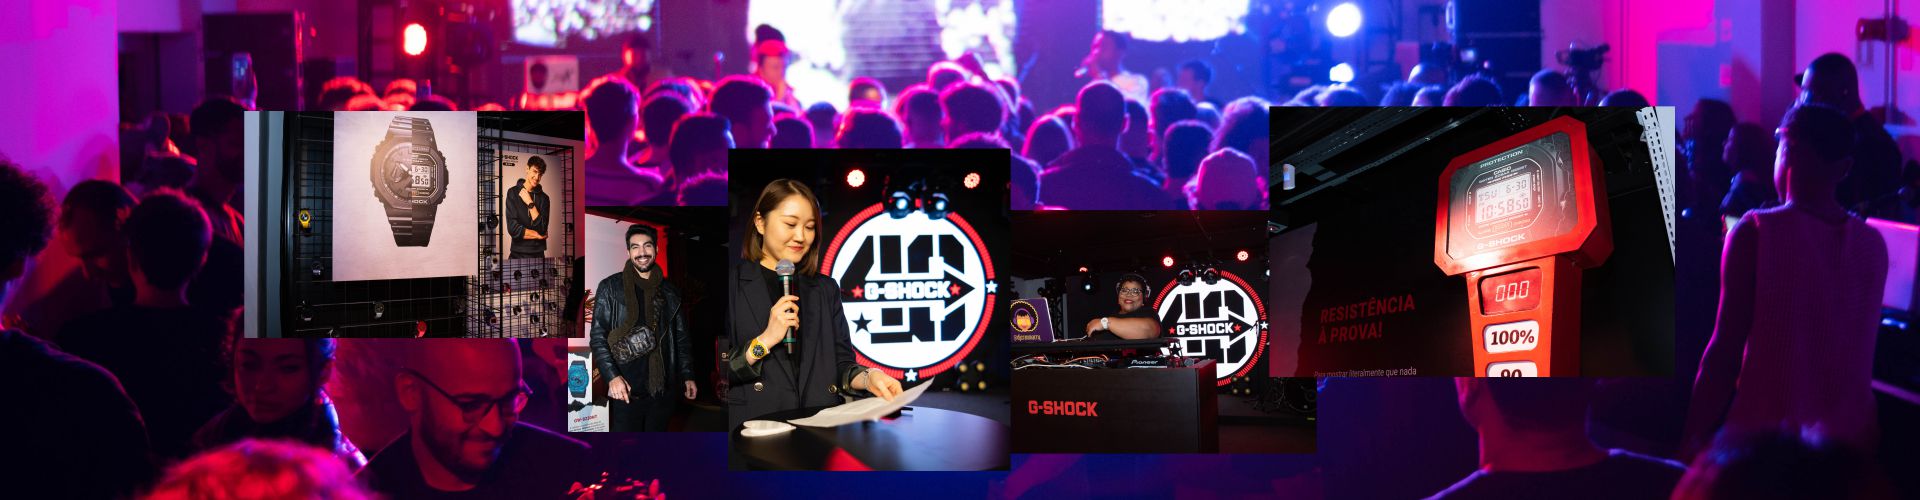 Cases em Brand Experience | Festa 40 Anos G-Shock